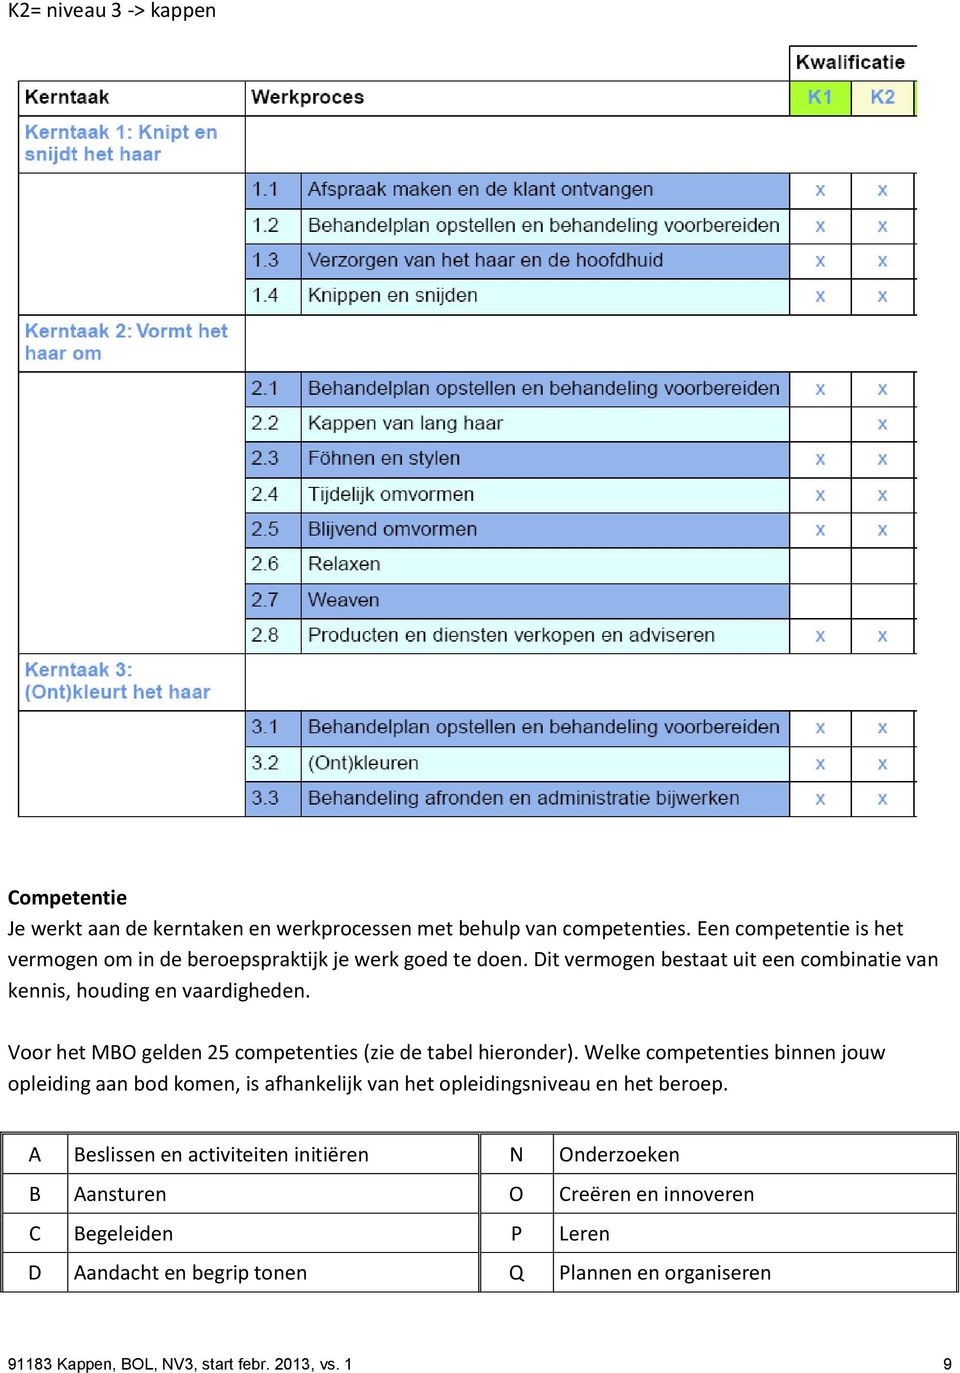 Voor het MBO gelden 25 competenties (zie de tabel hieronder).